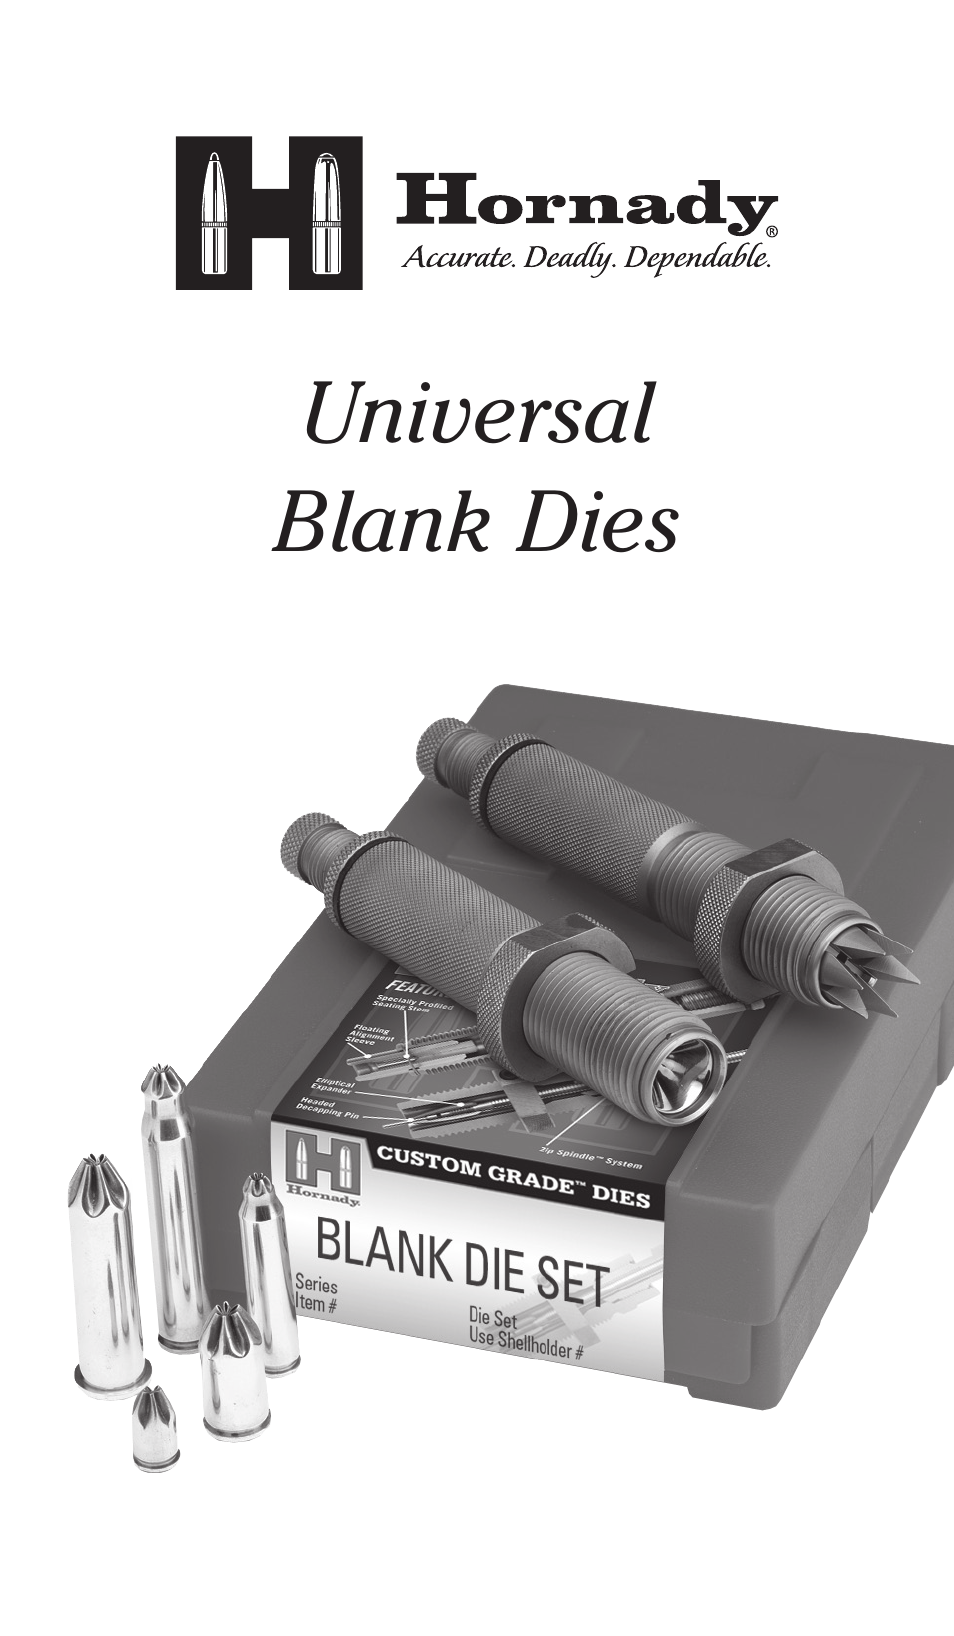 Universal Blank Dies